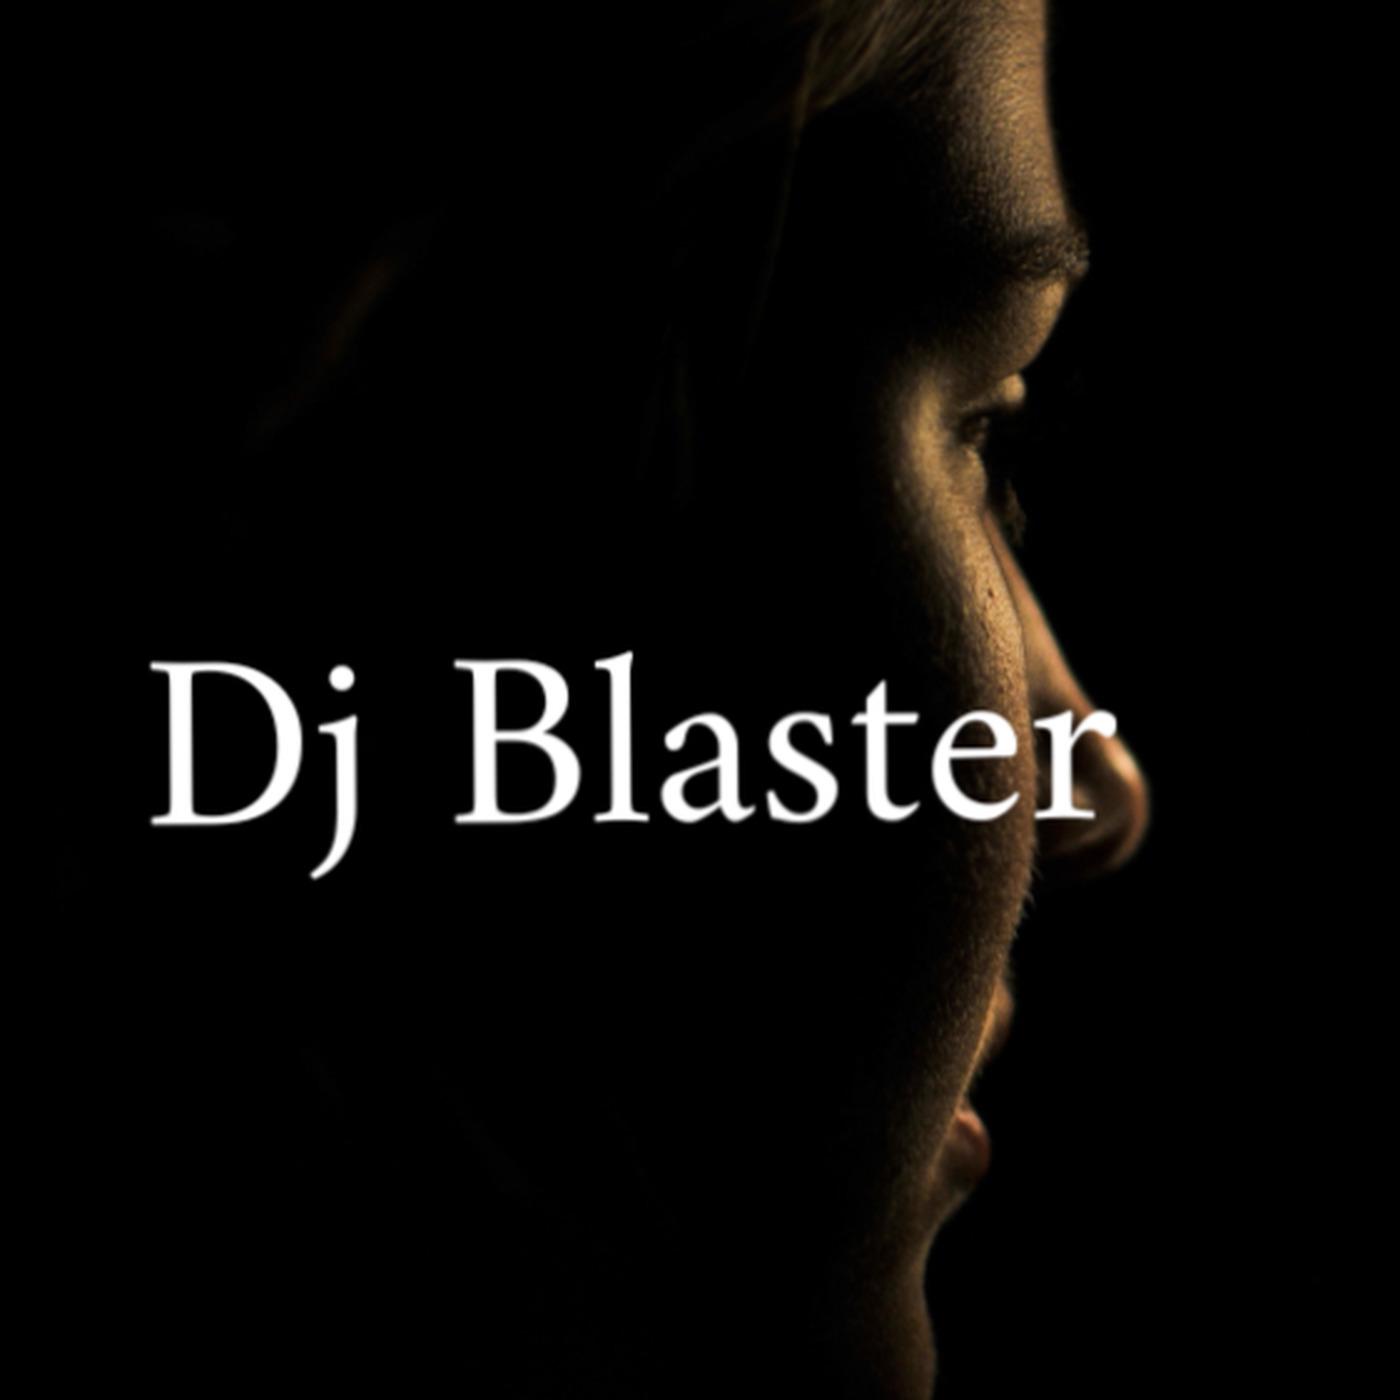 DJ Blaster - Dj Already Gone (Remix)